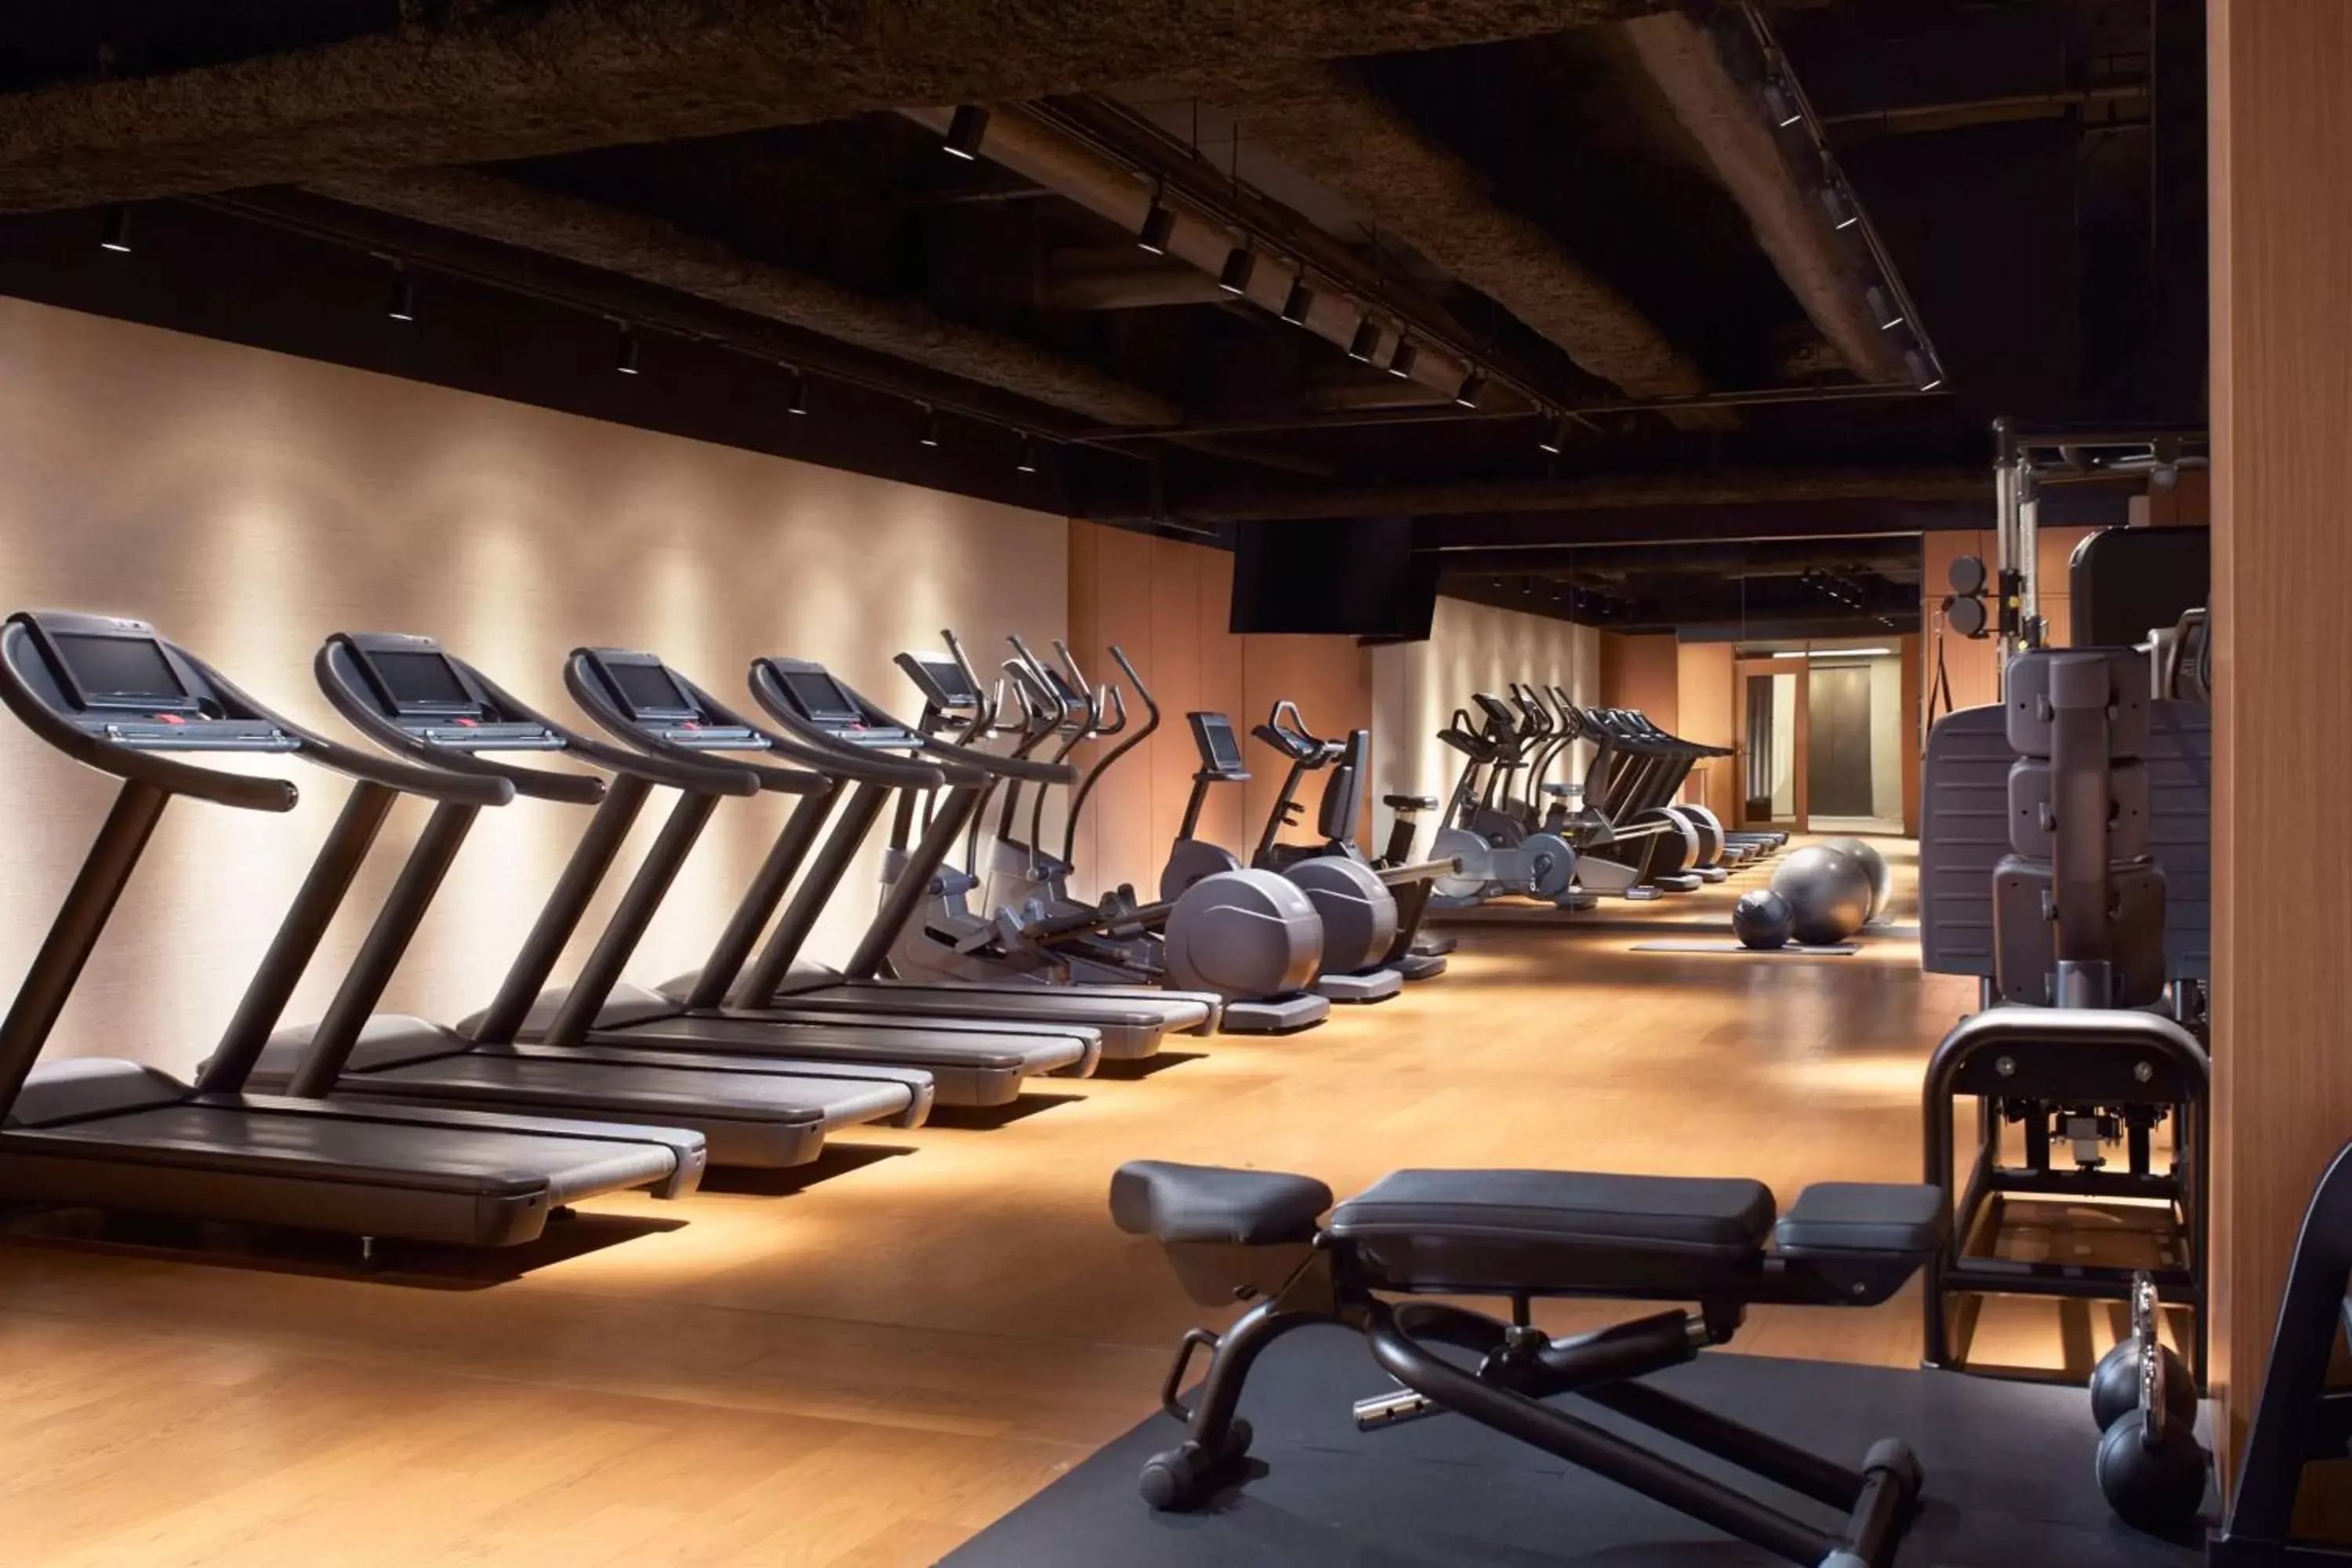 Fitness centre/facilities, Fitness Center/Facilities in JW Marriott Hotel Nara